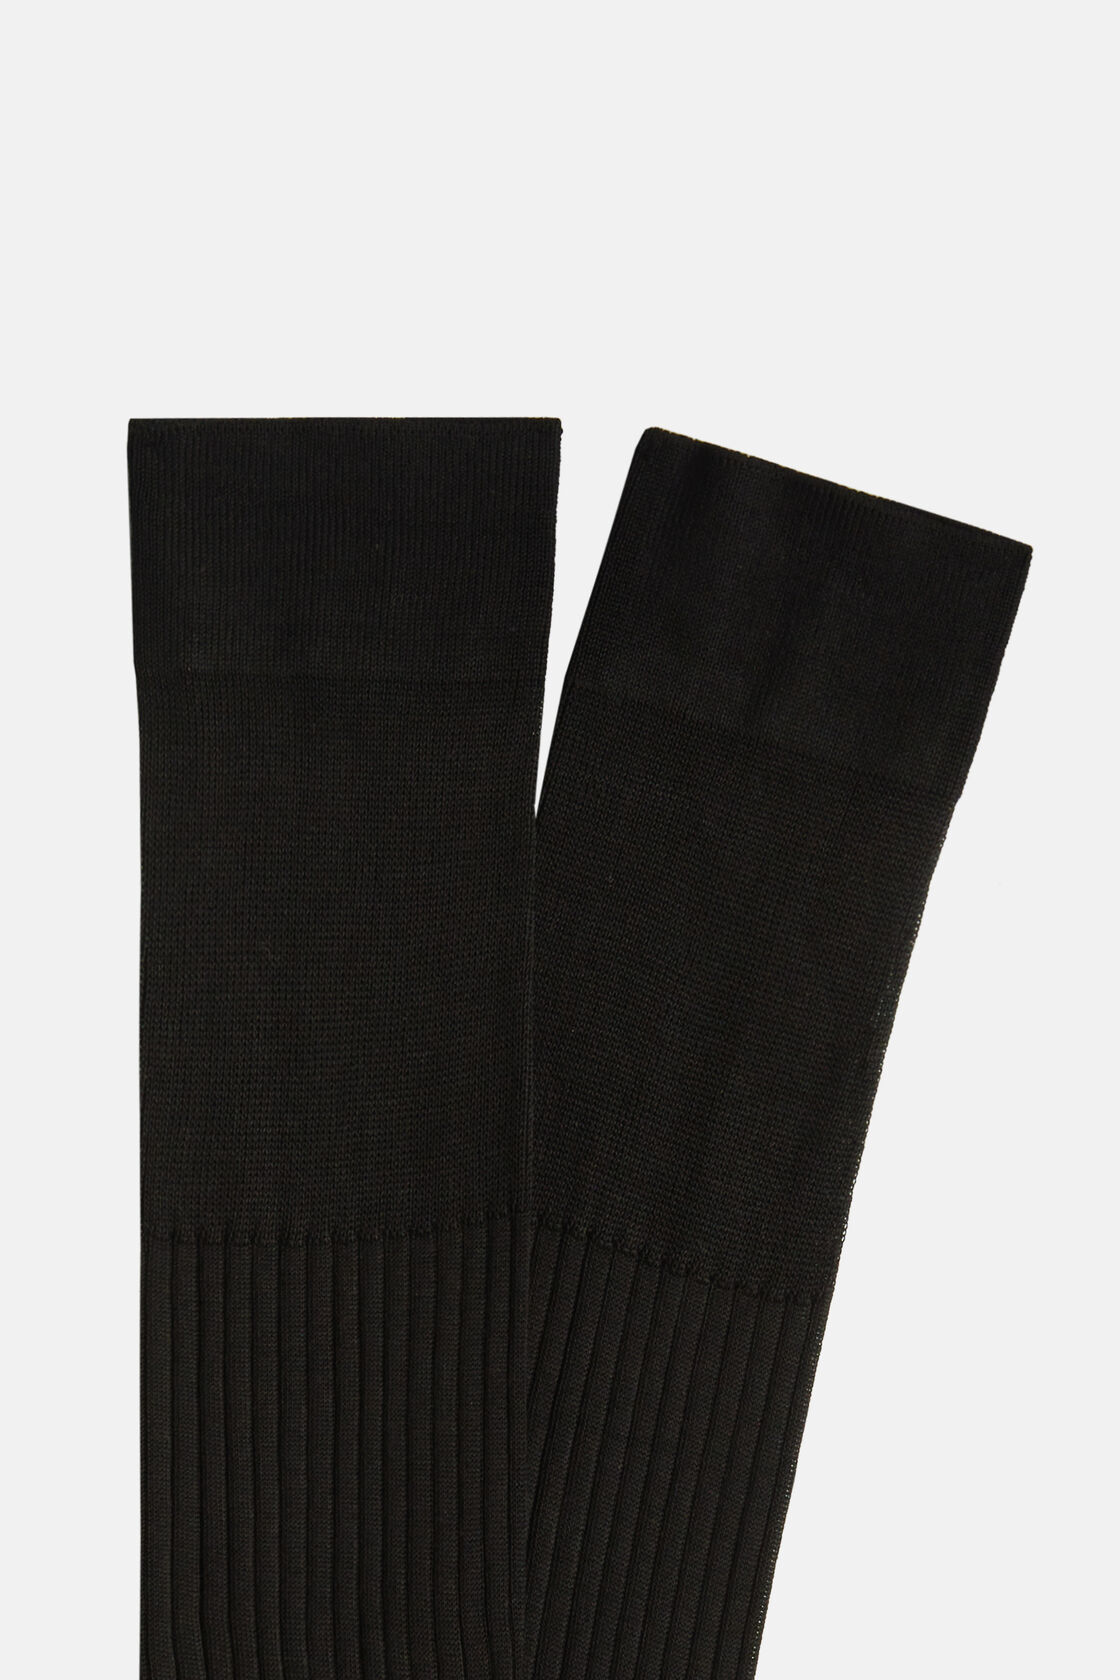 Βαμβακερές κάλτσες με ραβδώσεις, Black, hi-res